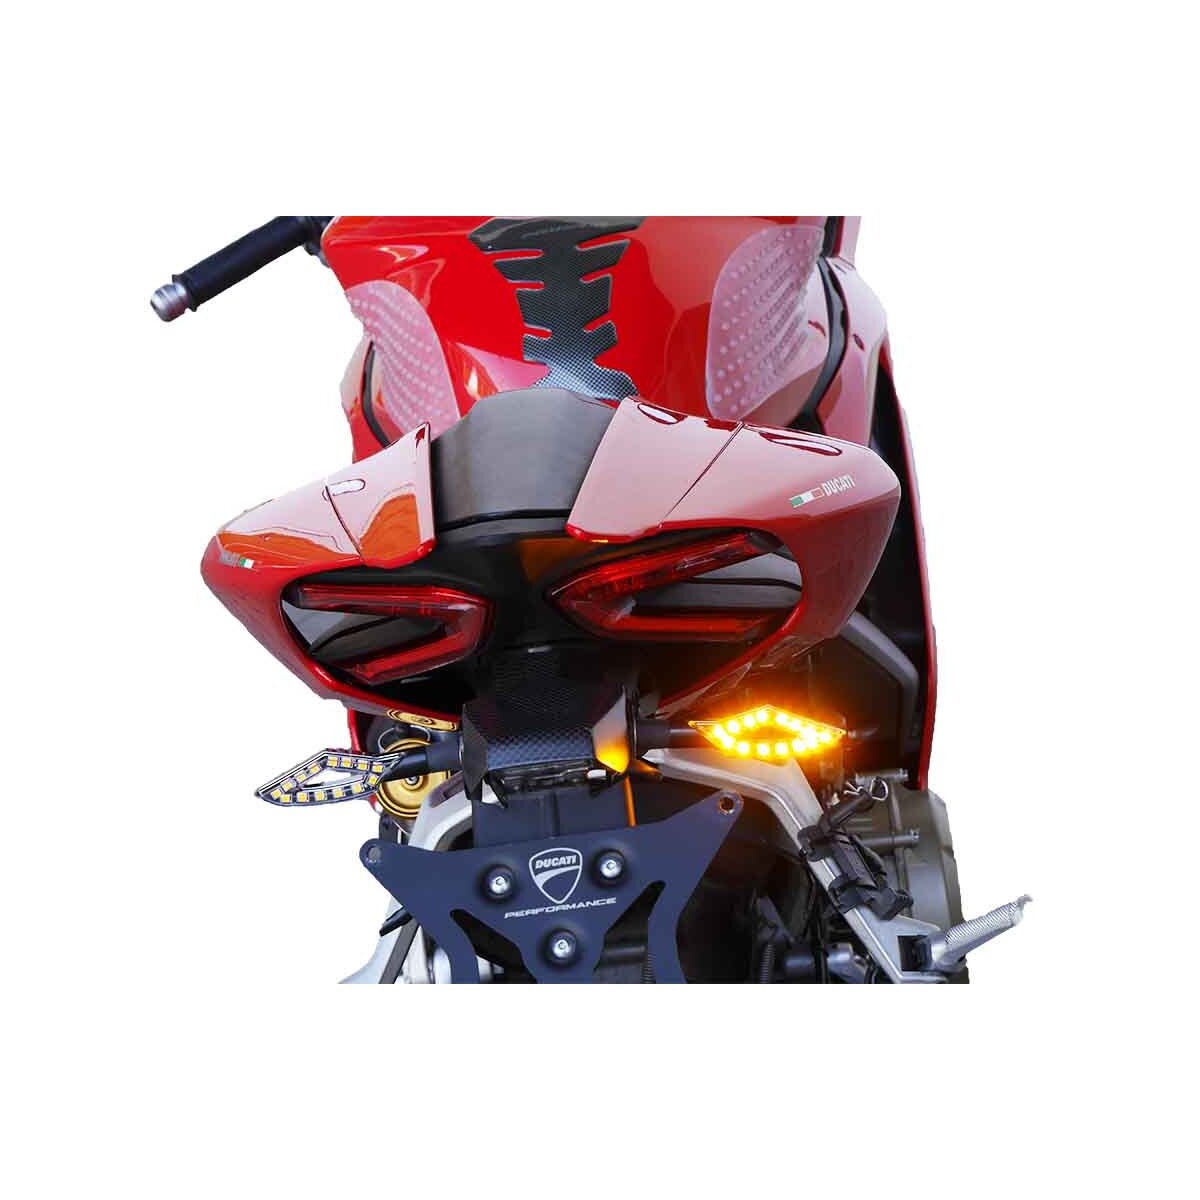 Motorrad LED Blinker & Lauflicht Blinker für dein Motorrad